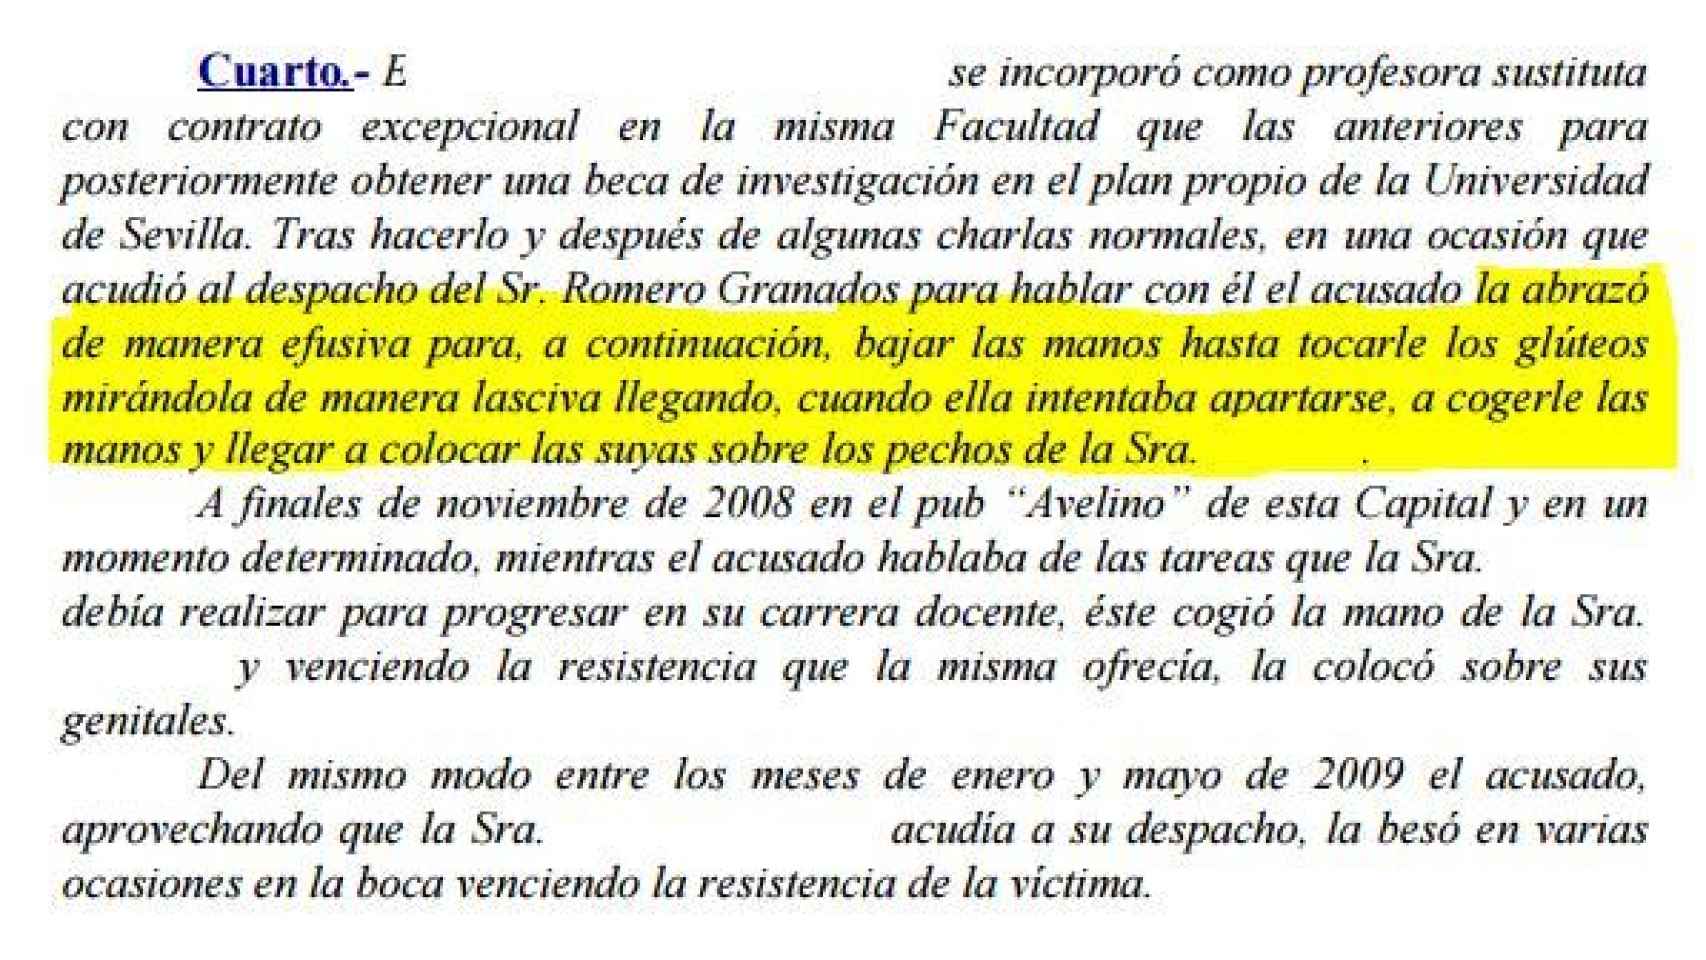 Frafmento de la sentencia donde se muestra el comportamiento de Romero Granados.